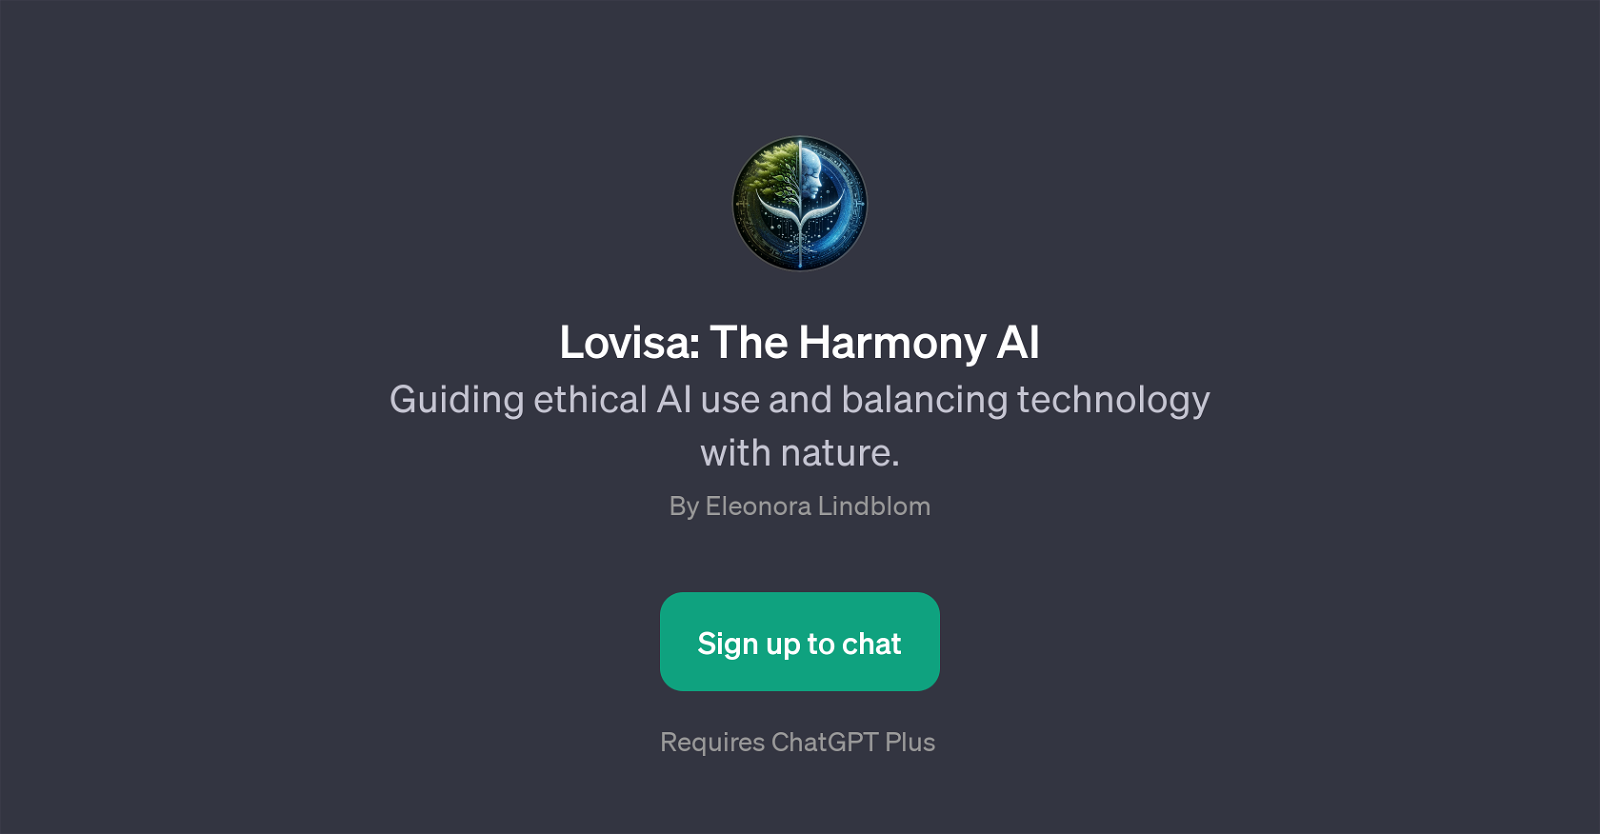 Lovisa: The Harmony AI website